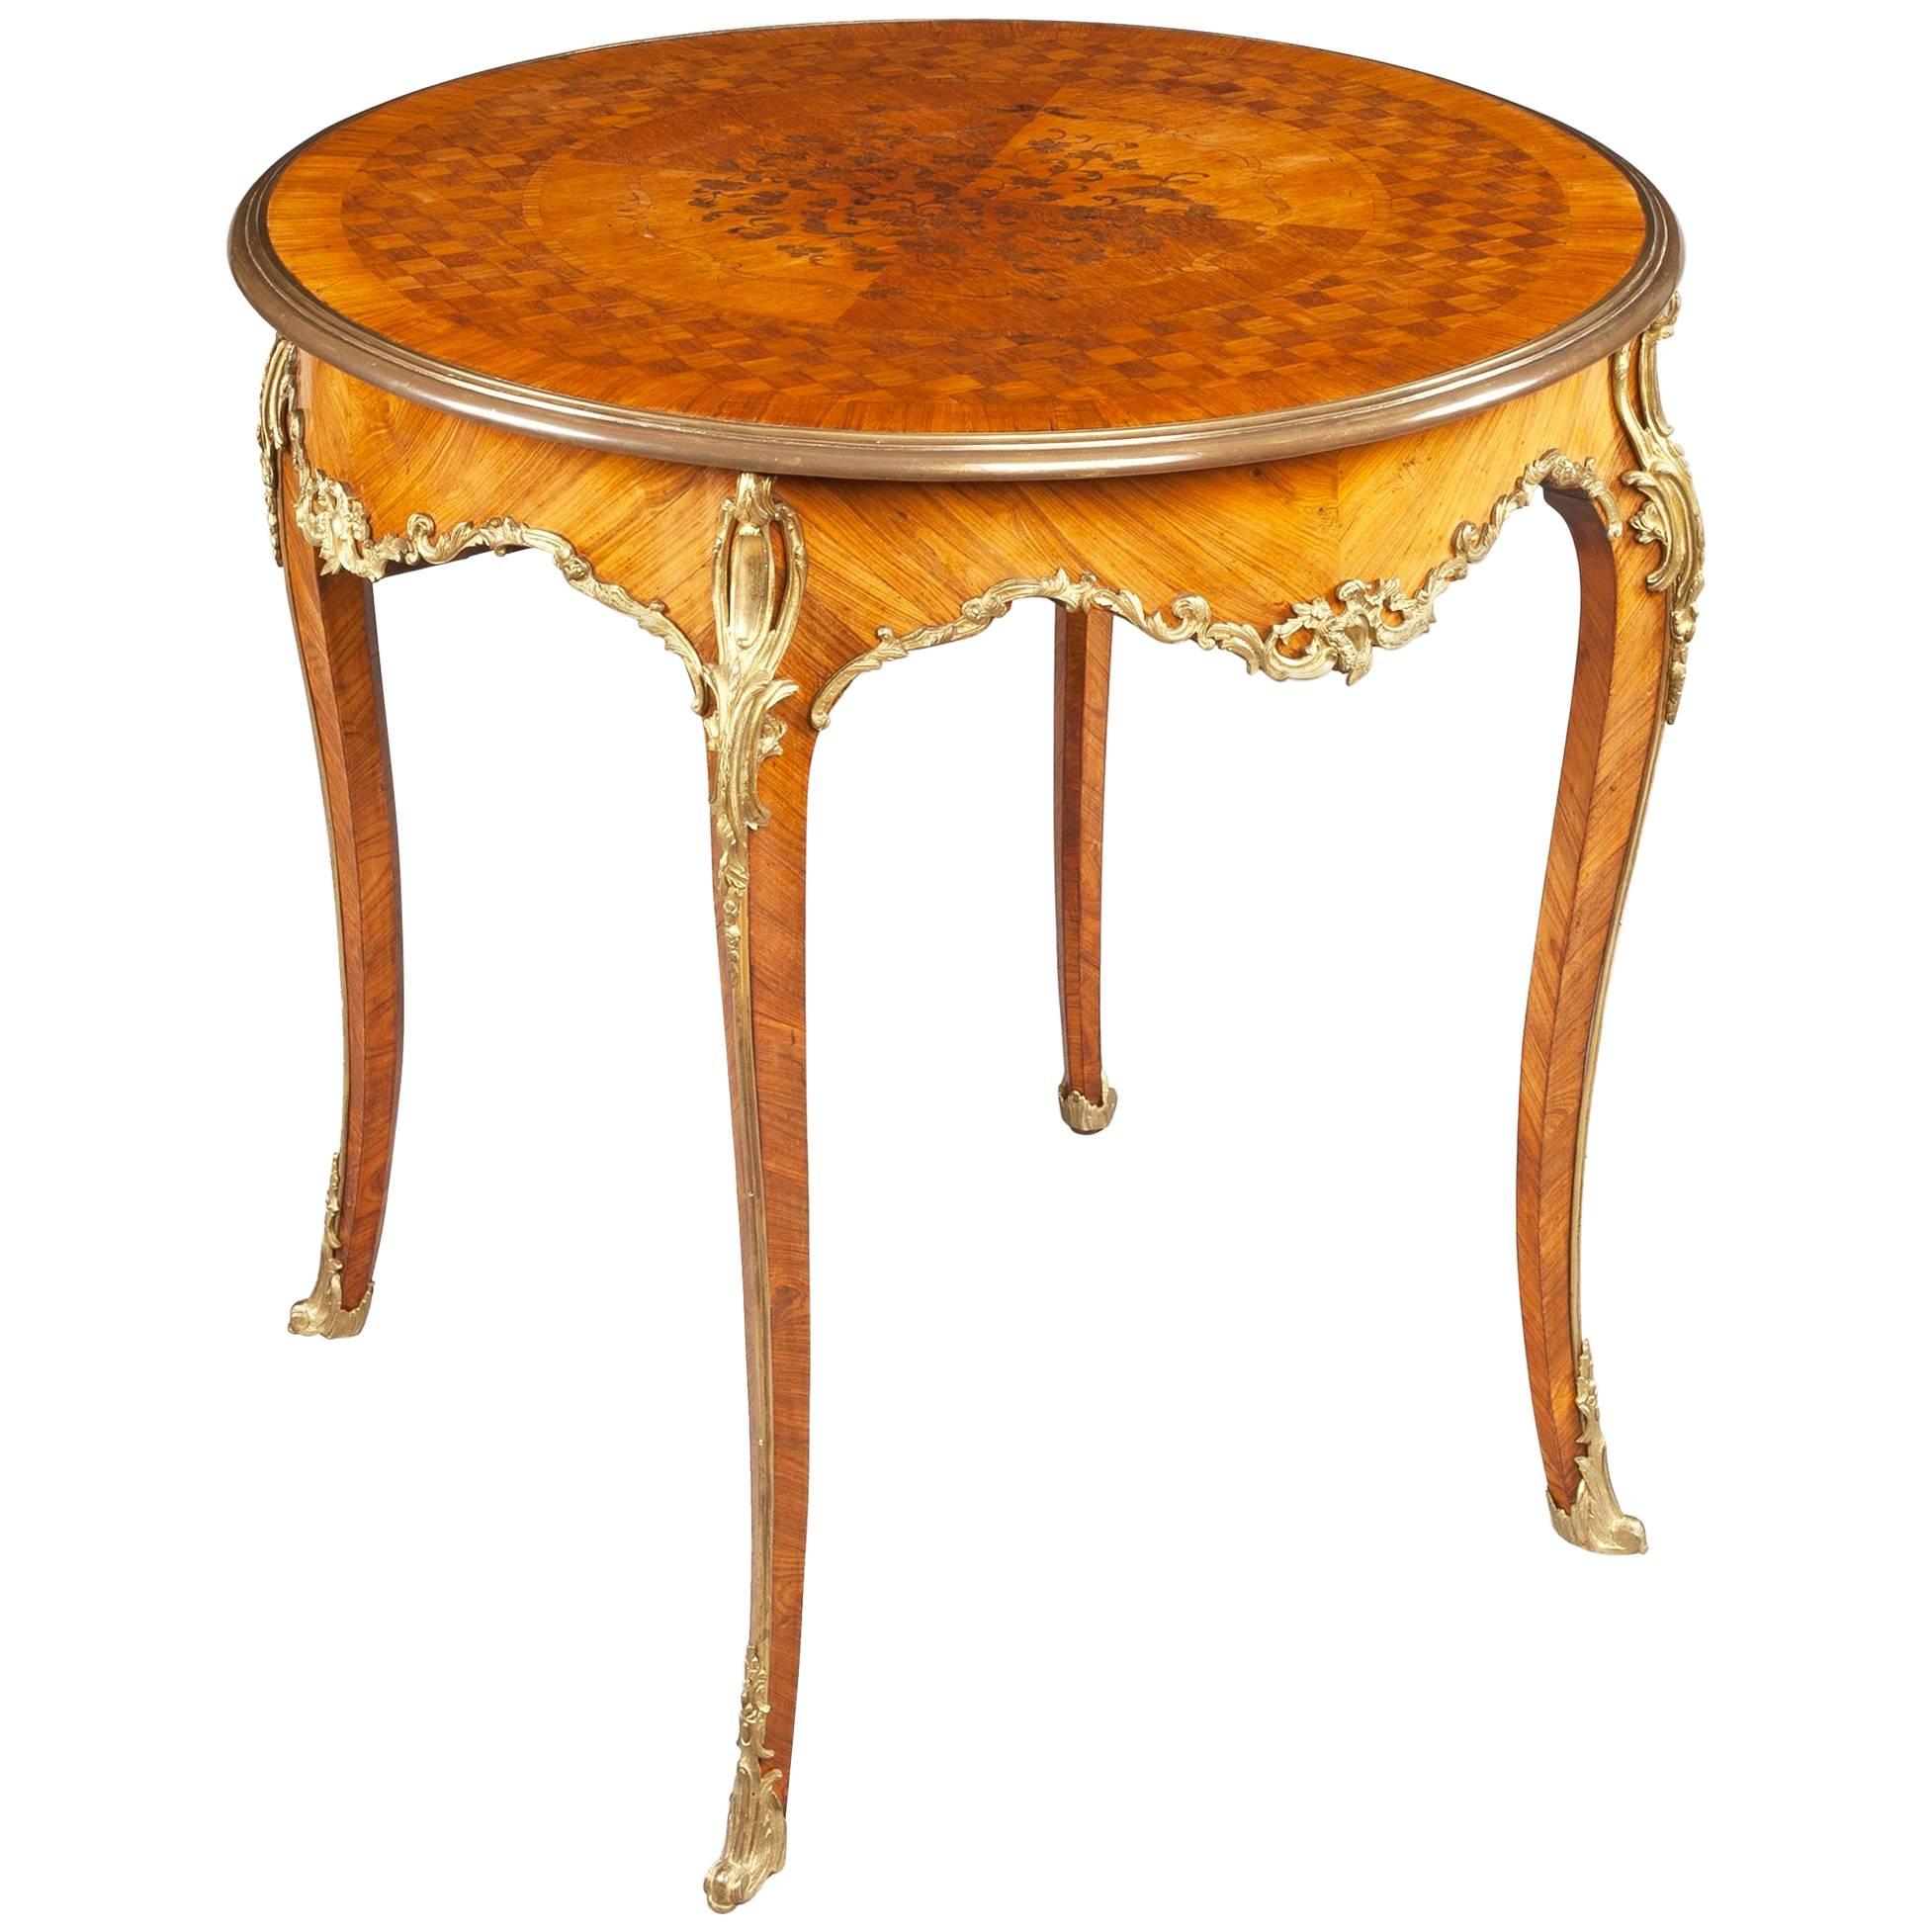 Table d'appoint ronde en bois de violette française et parqueterie en bronze doré, XIXe siècle